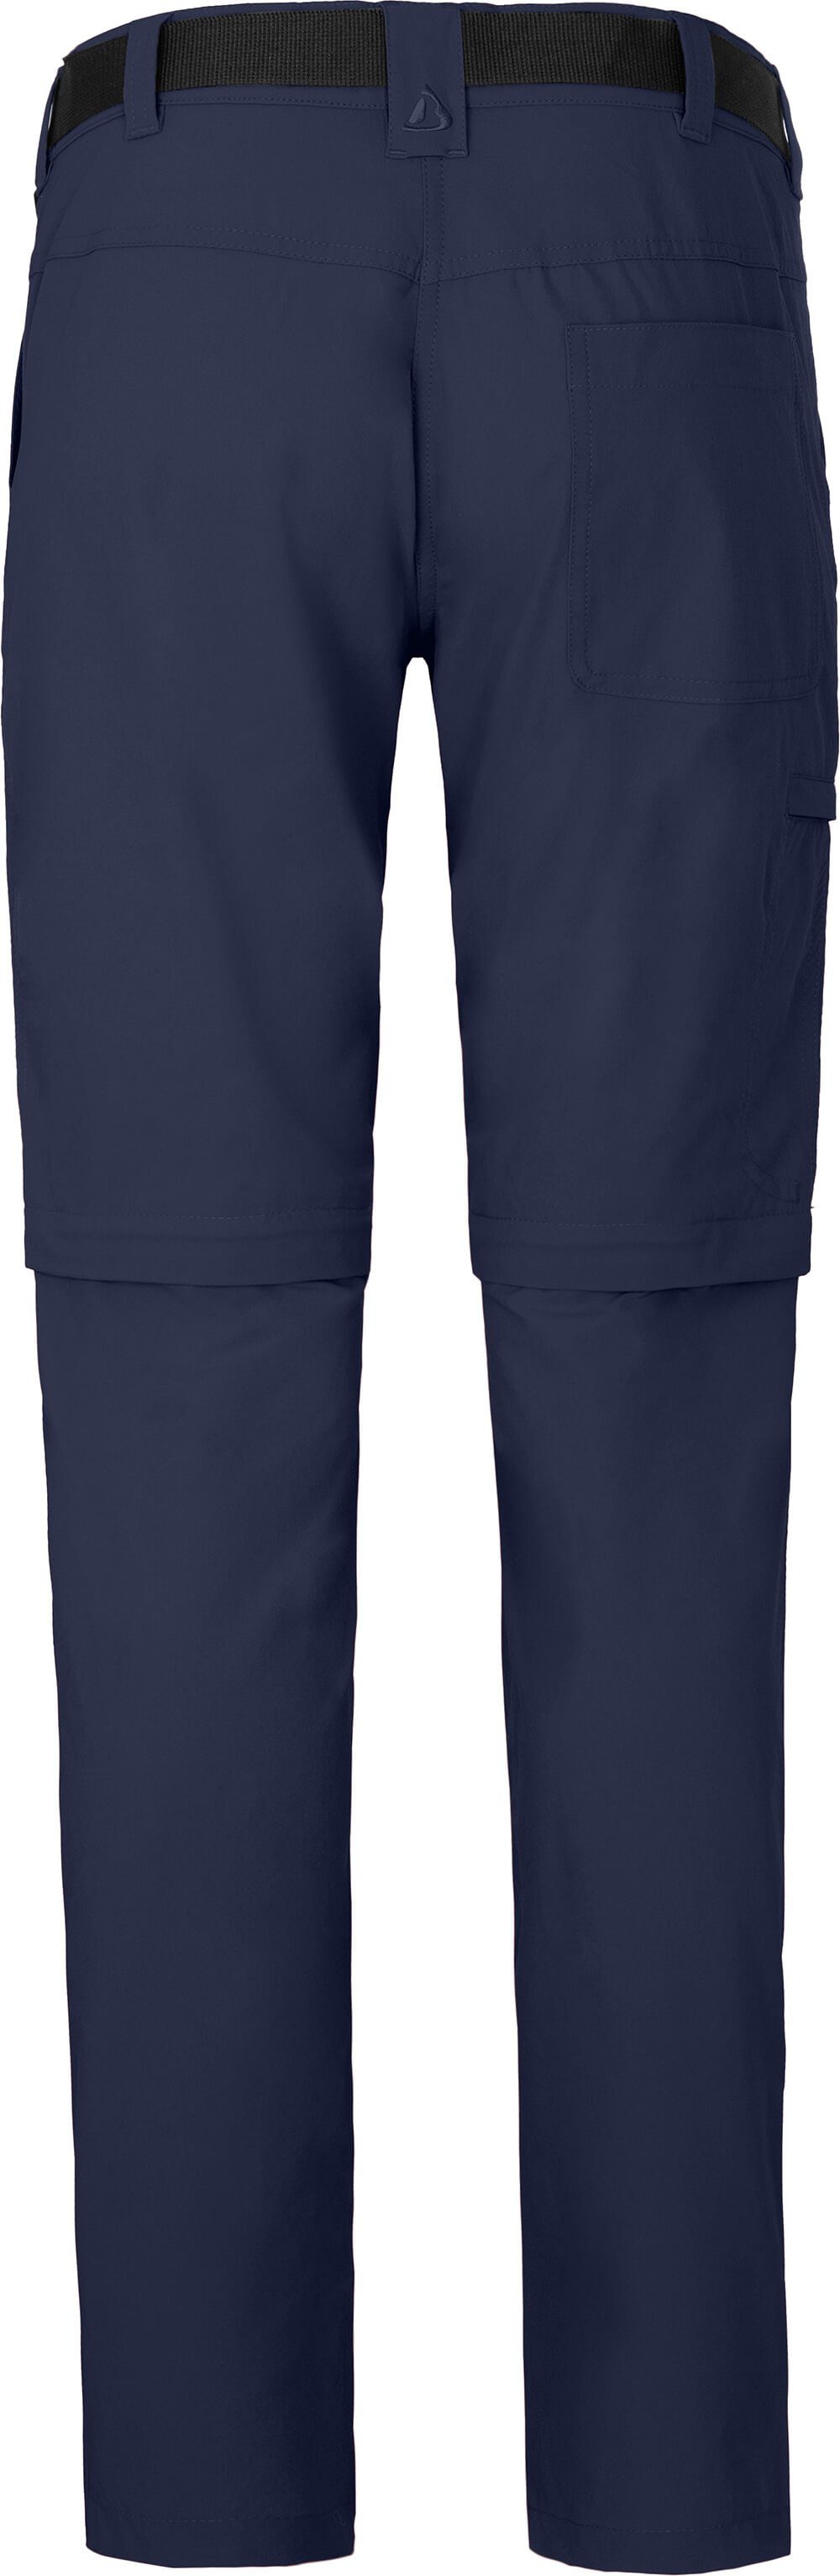 Zipp-Off Bergson (slim) BENNETT peacoat pflegeleicht, Damen Wanderhose, Normalgrößen, blau vielseitig, Zip-off-Hose